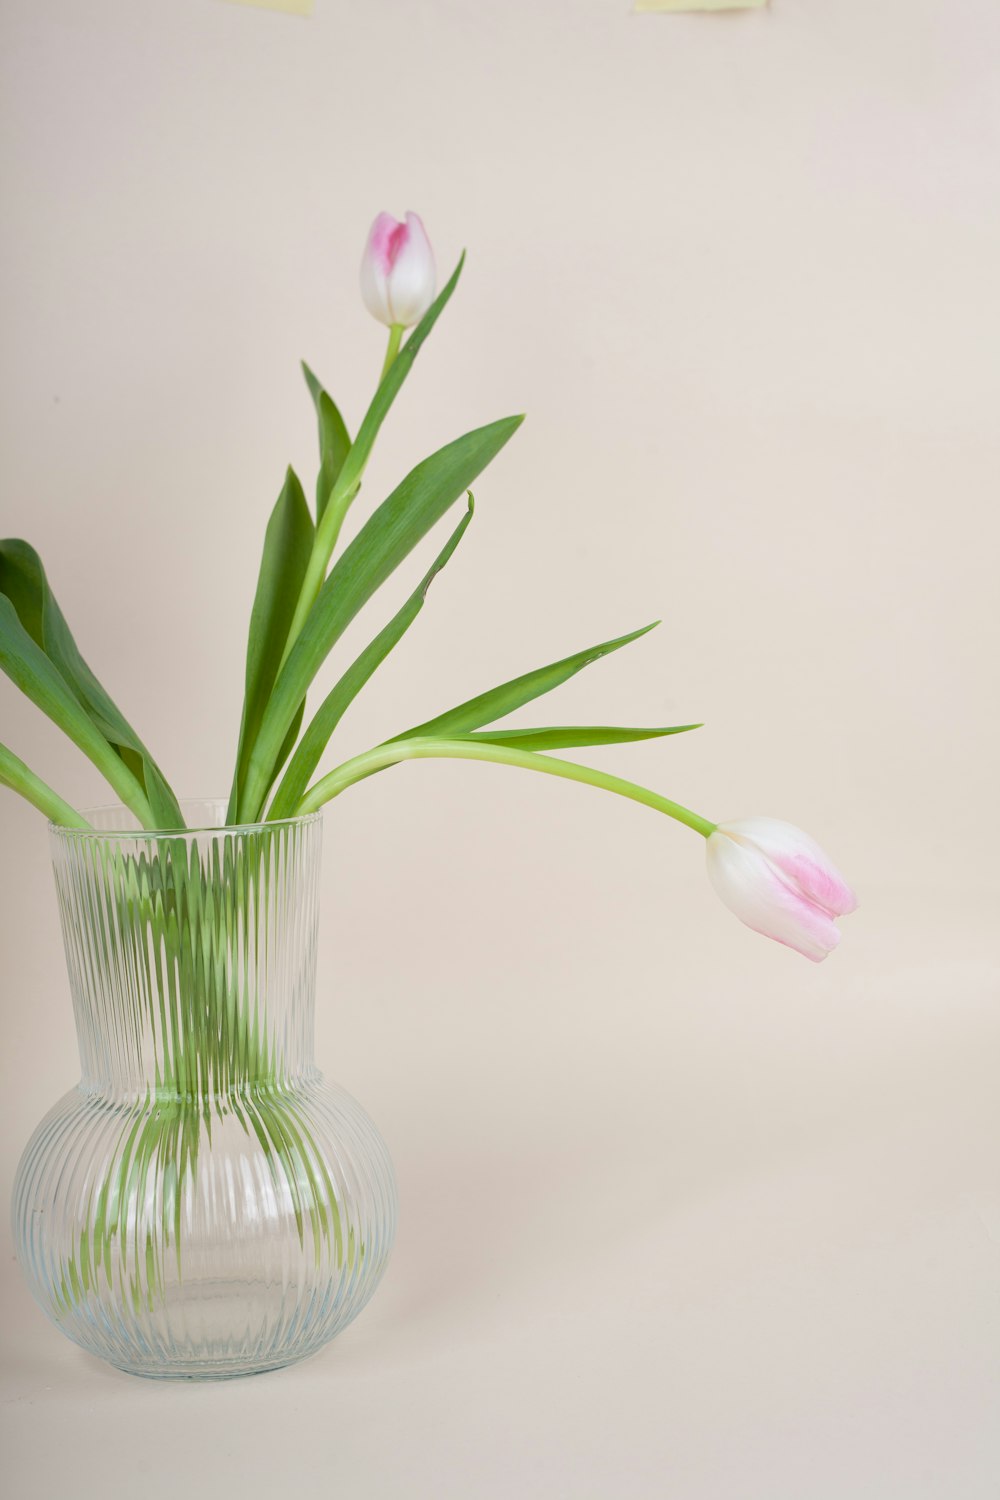 ピンクと白のチューリップで満たされたガラスの花瓶